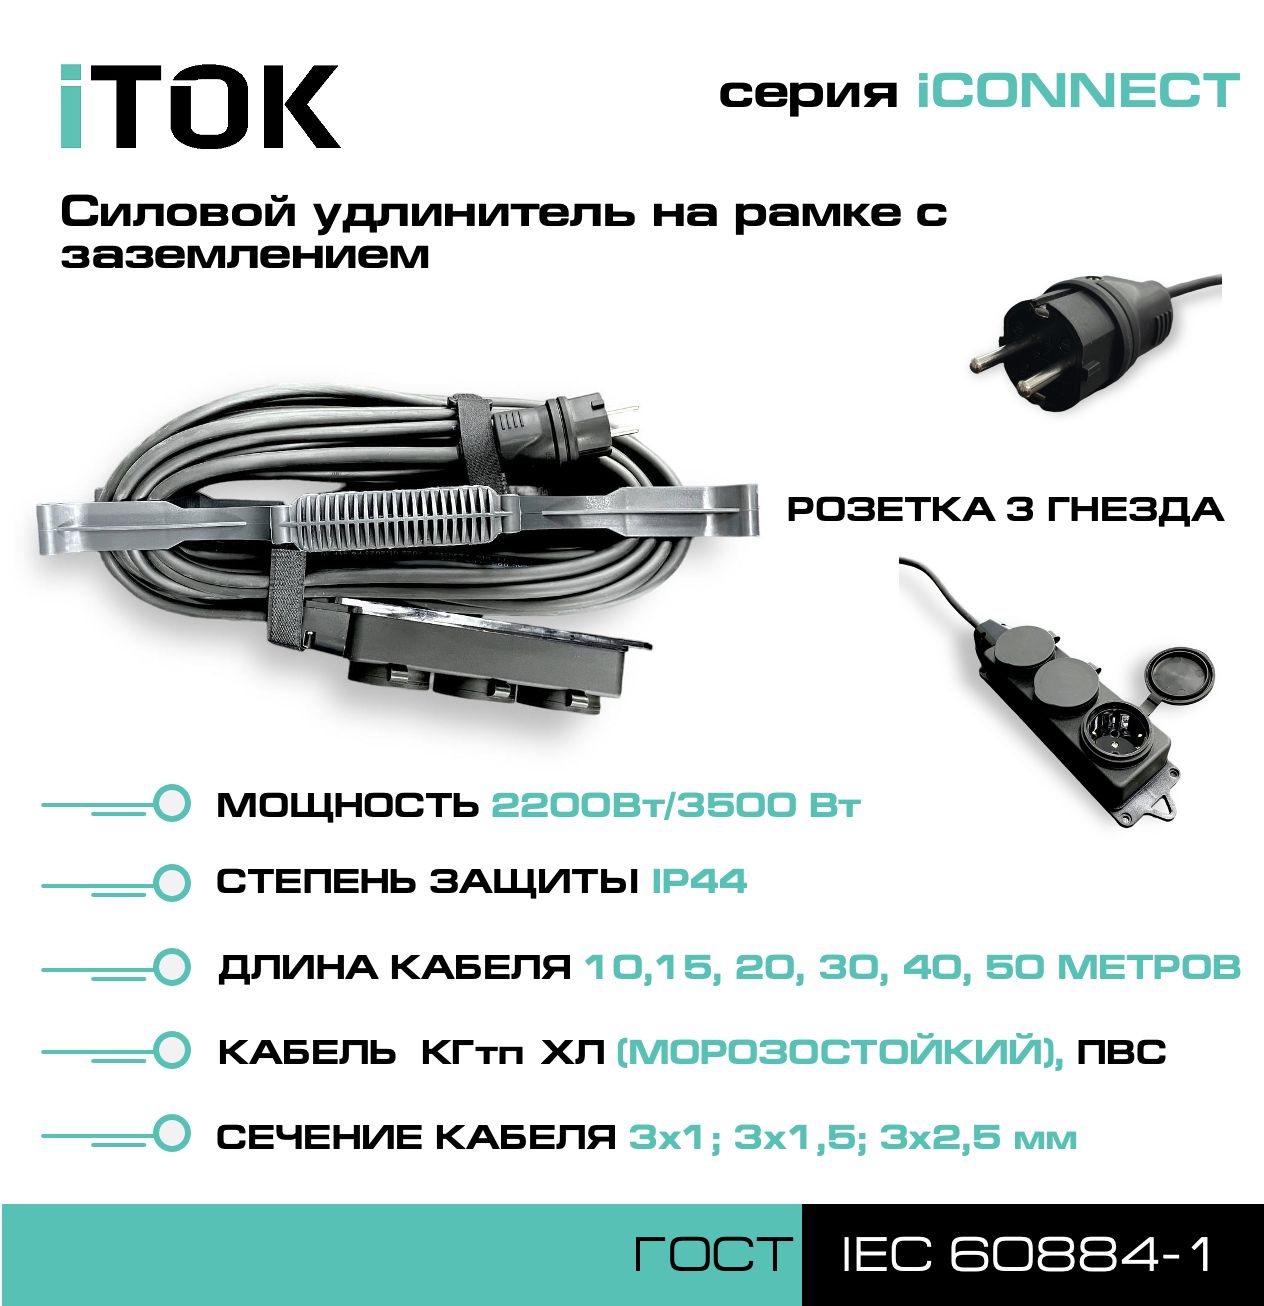 фото Удлинитель на рамке с заземлением серии itok iconnect пвс 3х2,5 мм 3 гнезда ip44 15 м